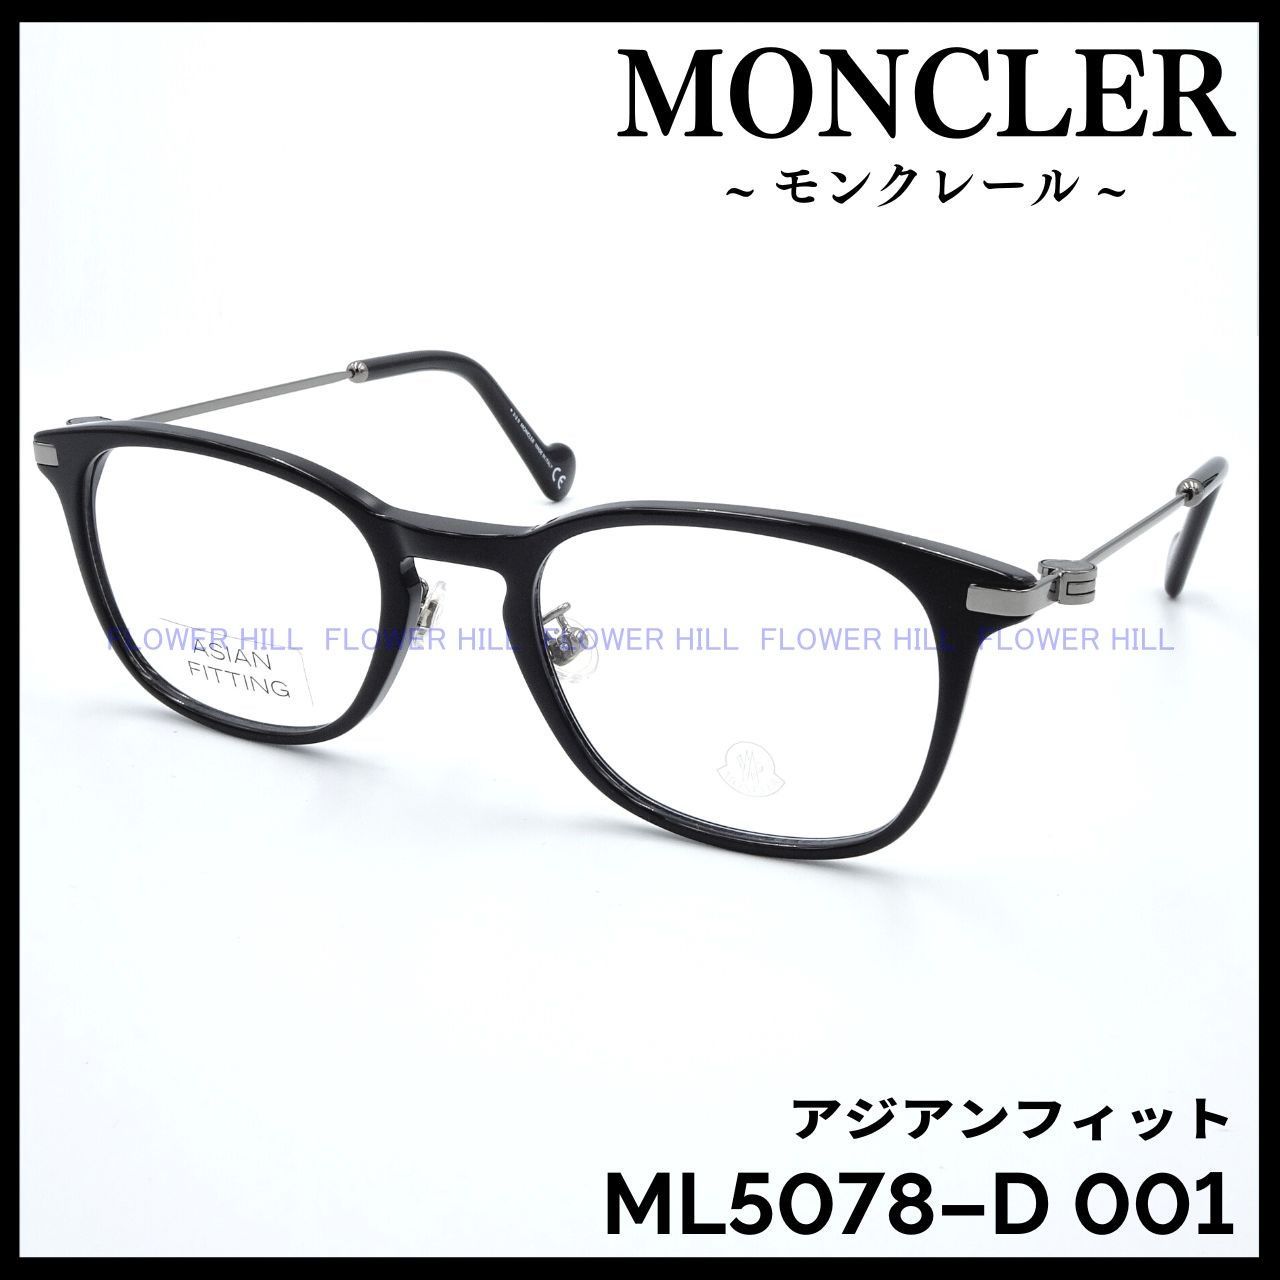 モンクレール MONCLER ML5078-D 001 メガネ フレーム アジアンフィット 